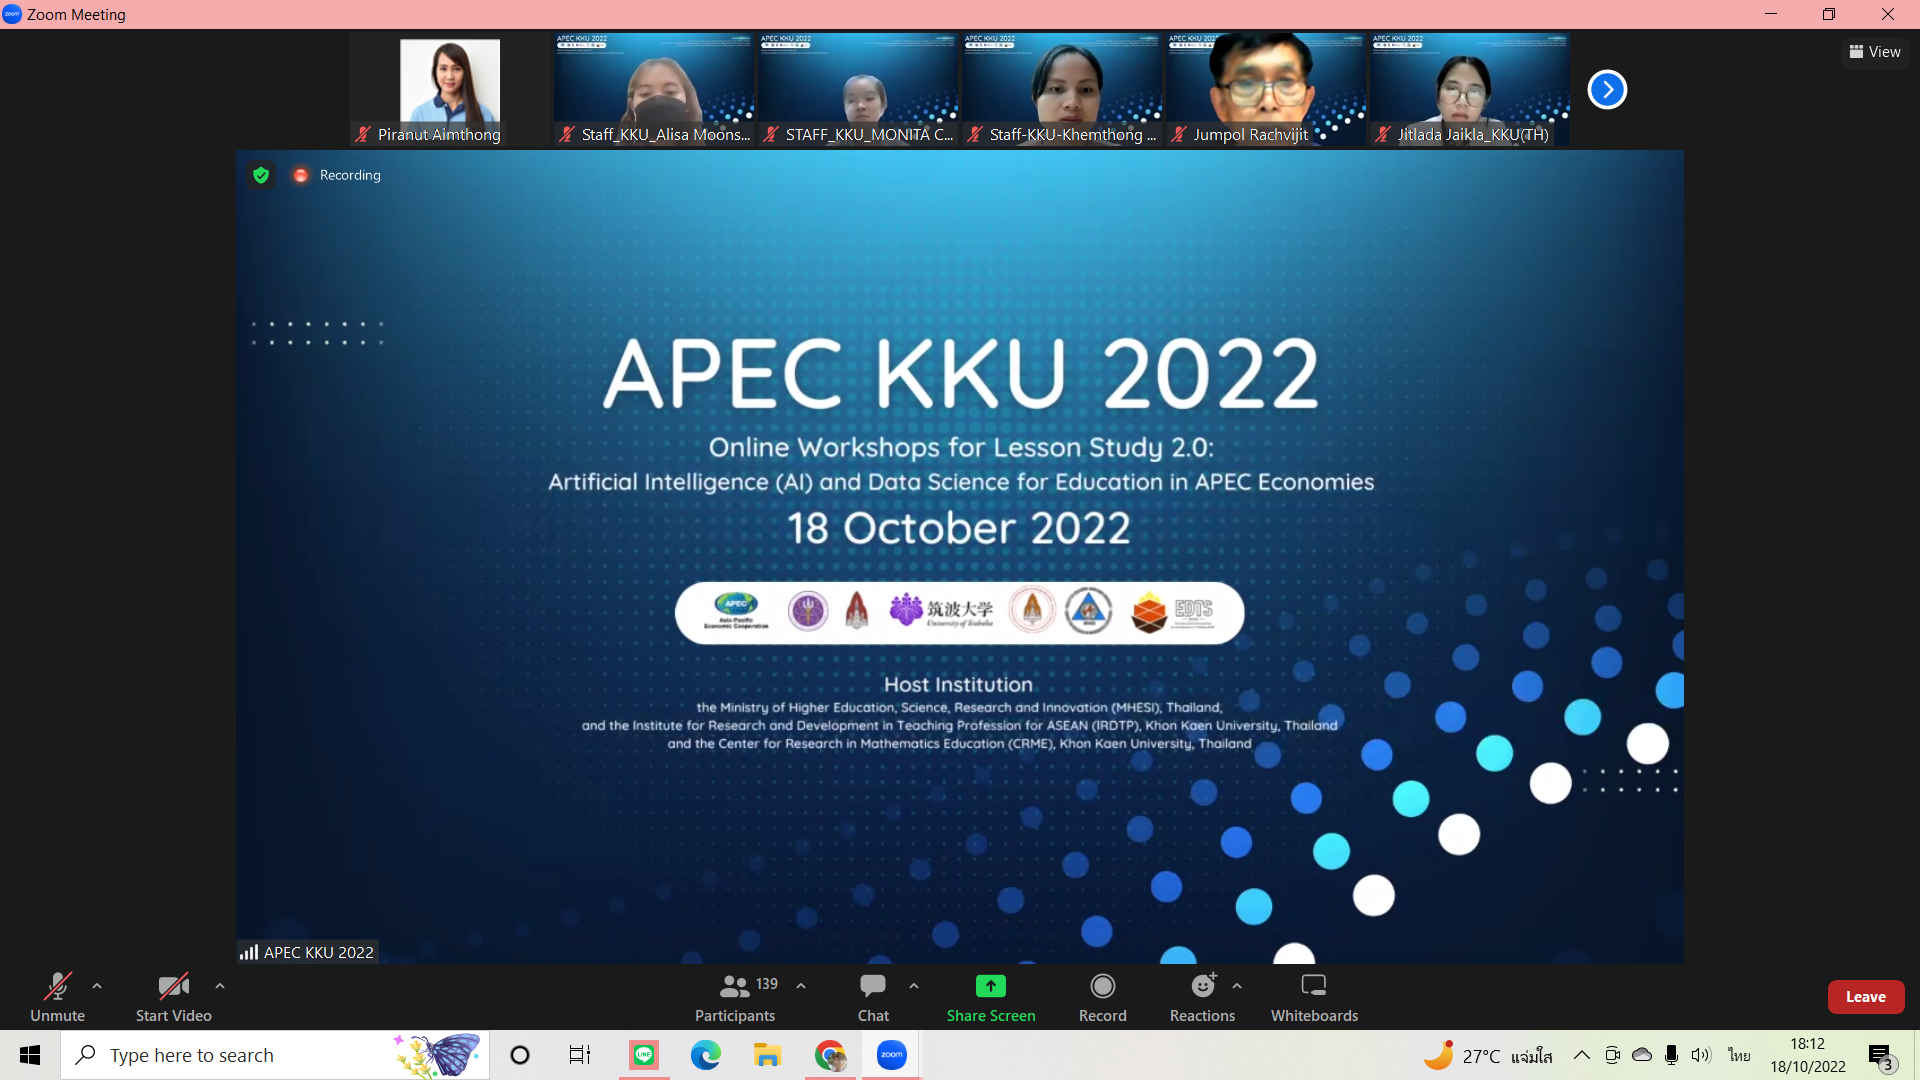 APEC KKU 2022